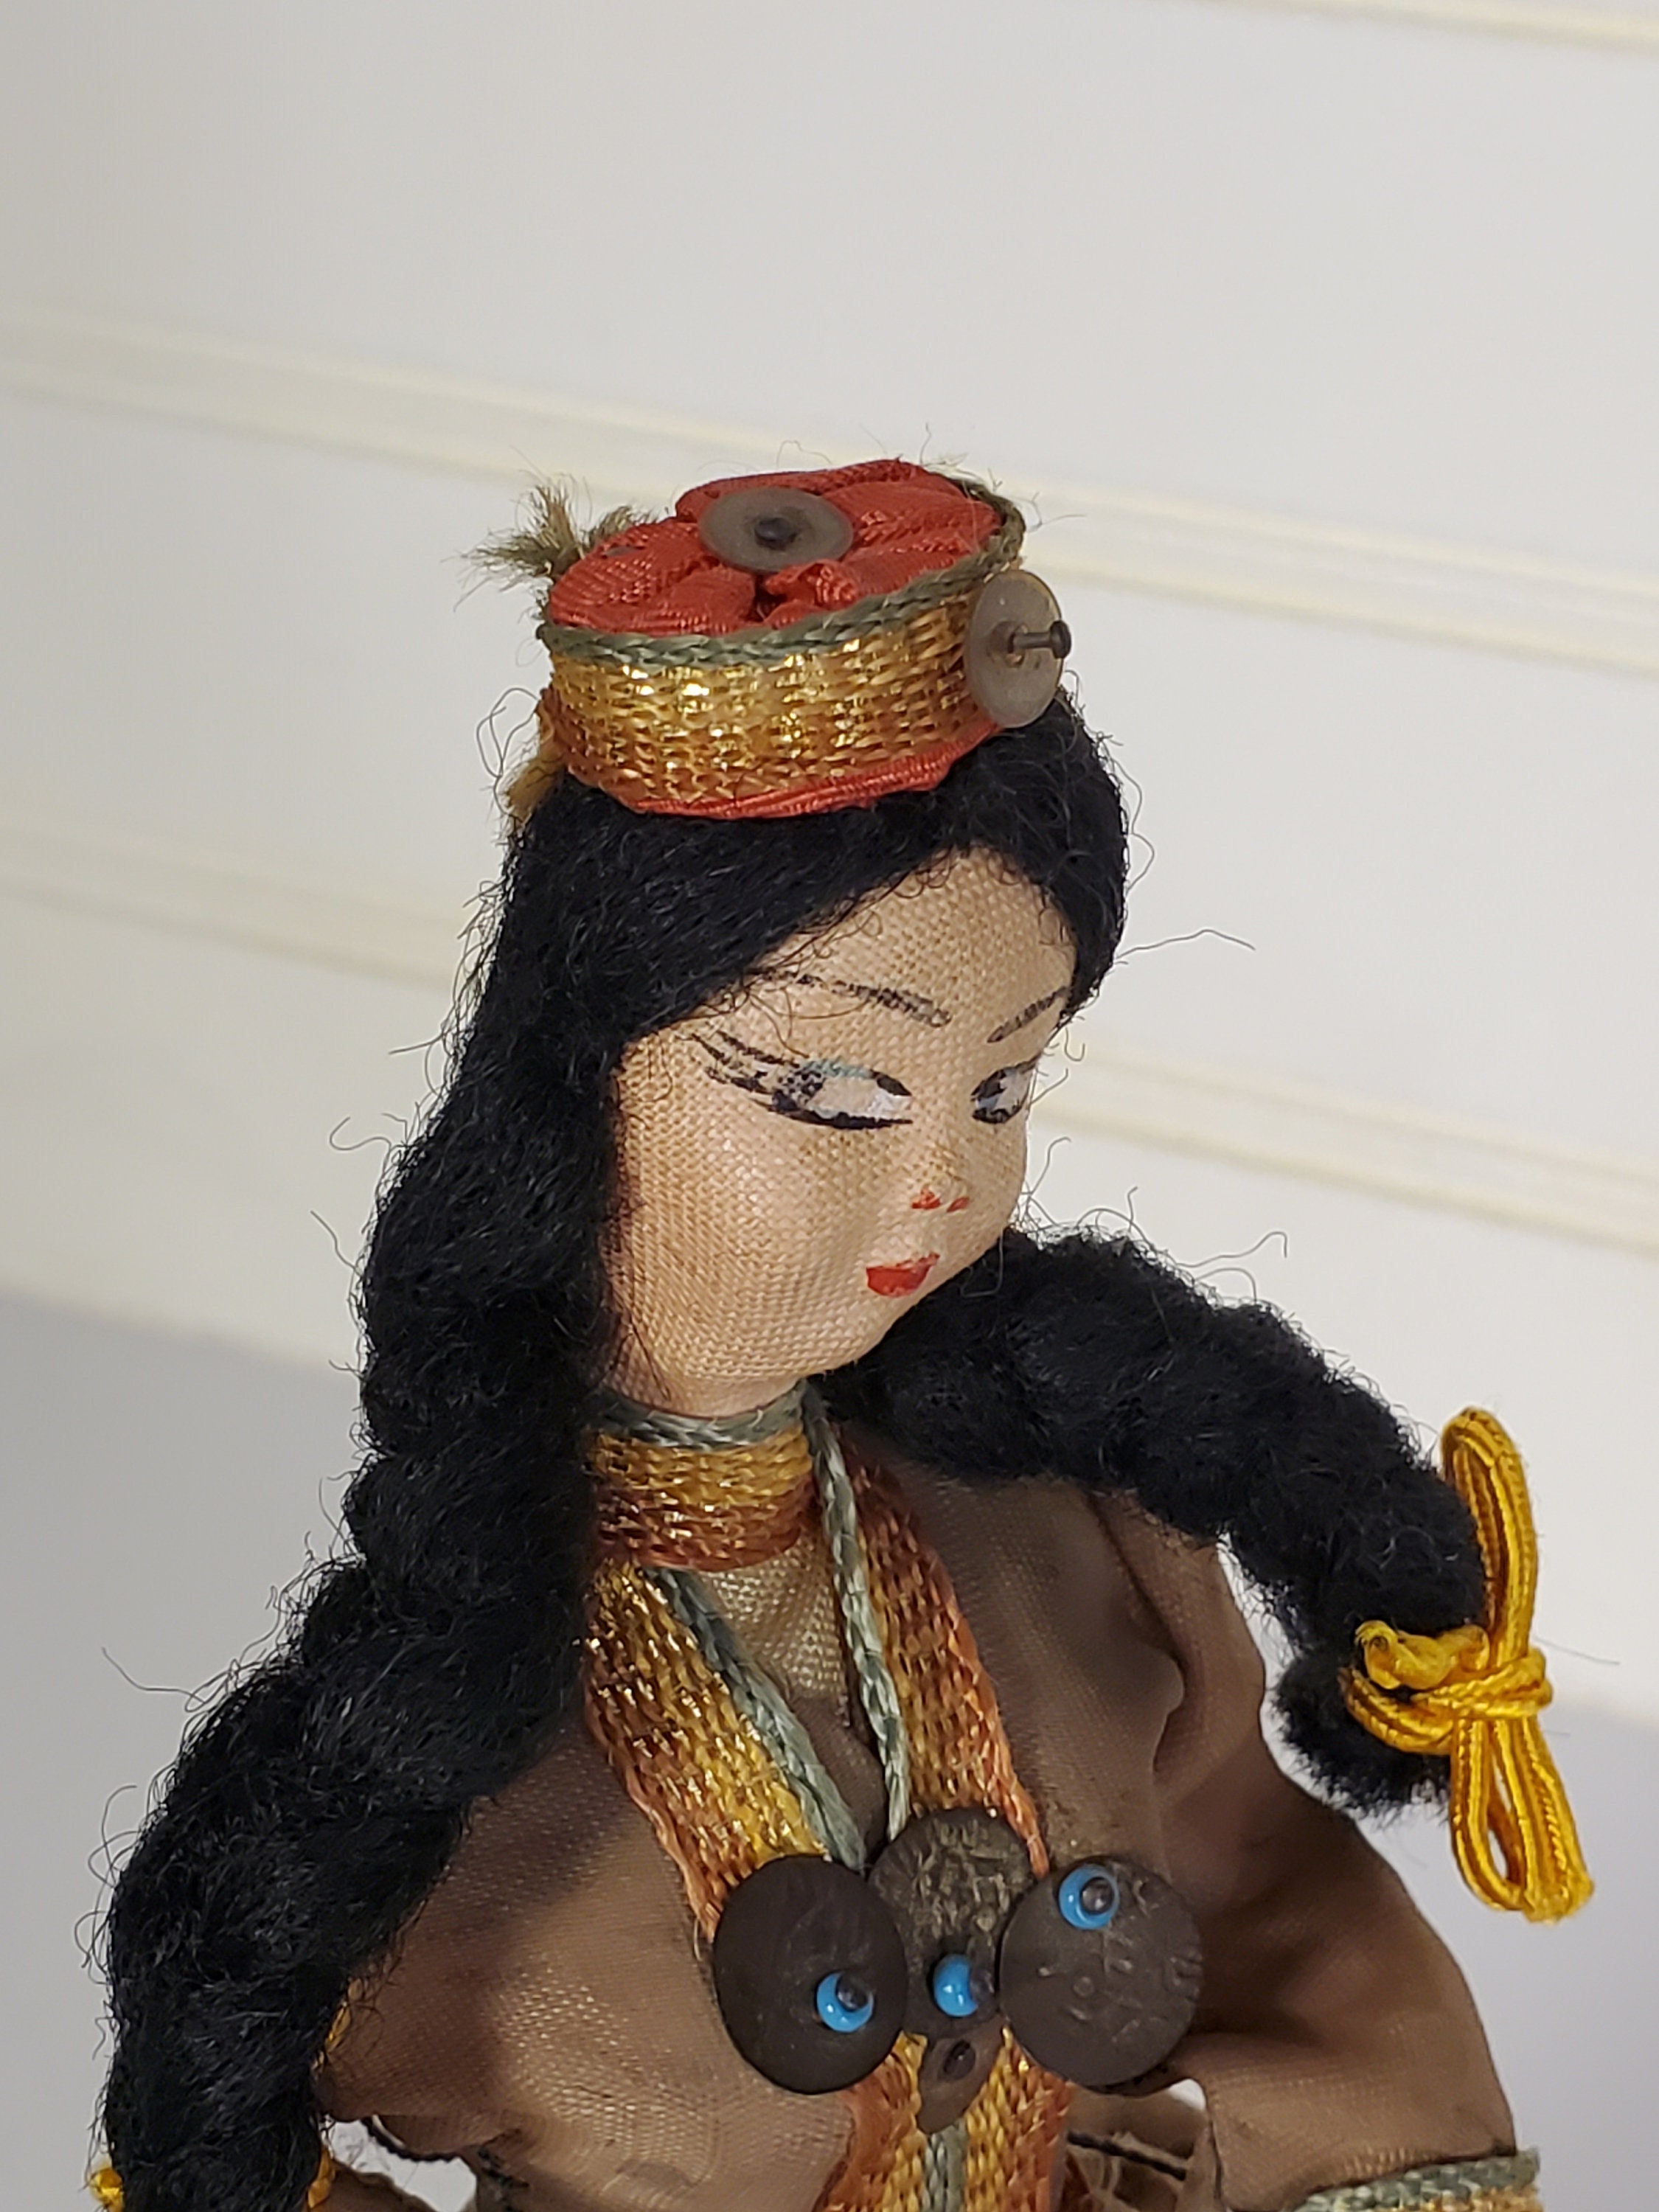 Poupée d'art folklorique turque, poupée/ornement souvenir antique/vintage  en costume traditionnel de Turquie, détails faits main et cousus à la main  -  France